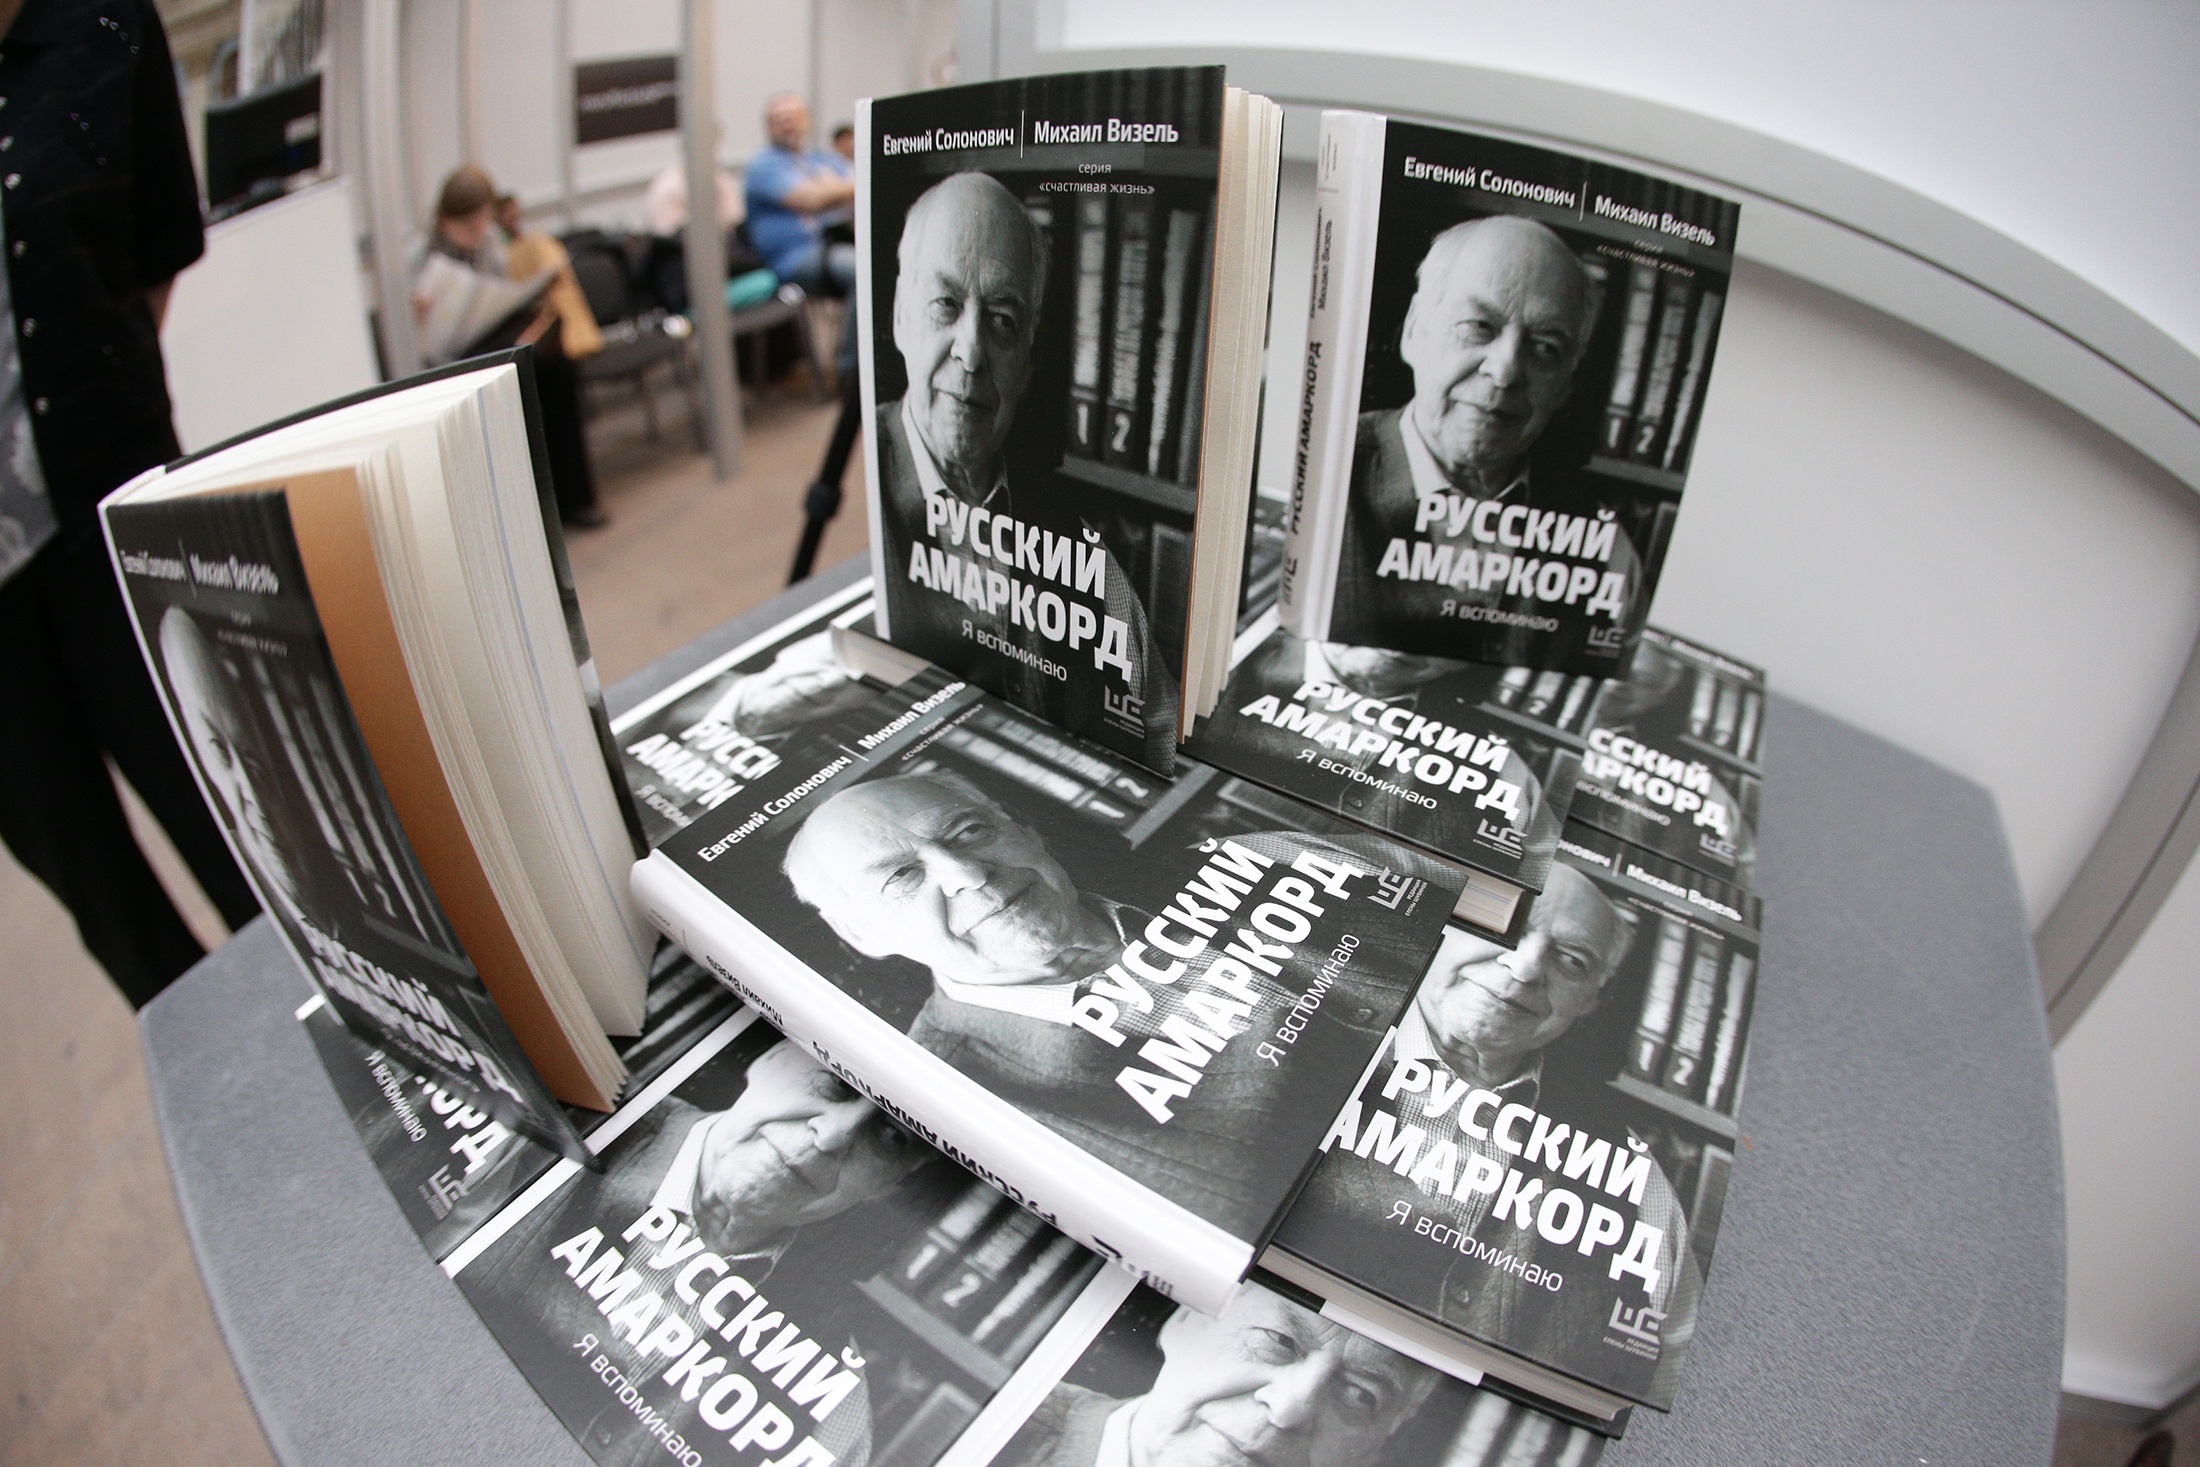 На ярмарке non/fictio№ представили книгу диалогов переводчика Евгения Солоновича с Михаилом Визелем